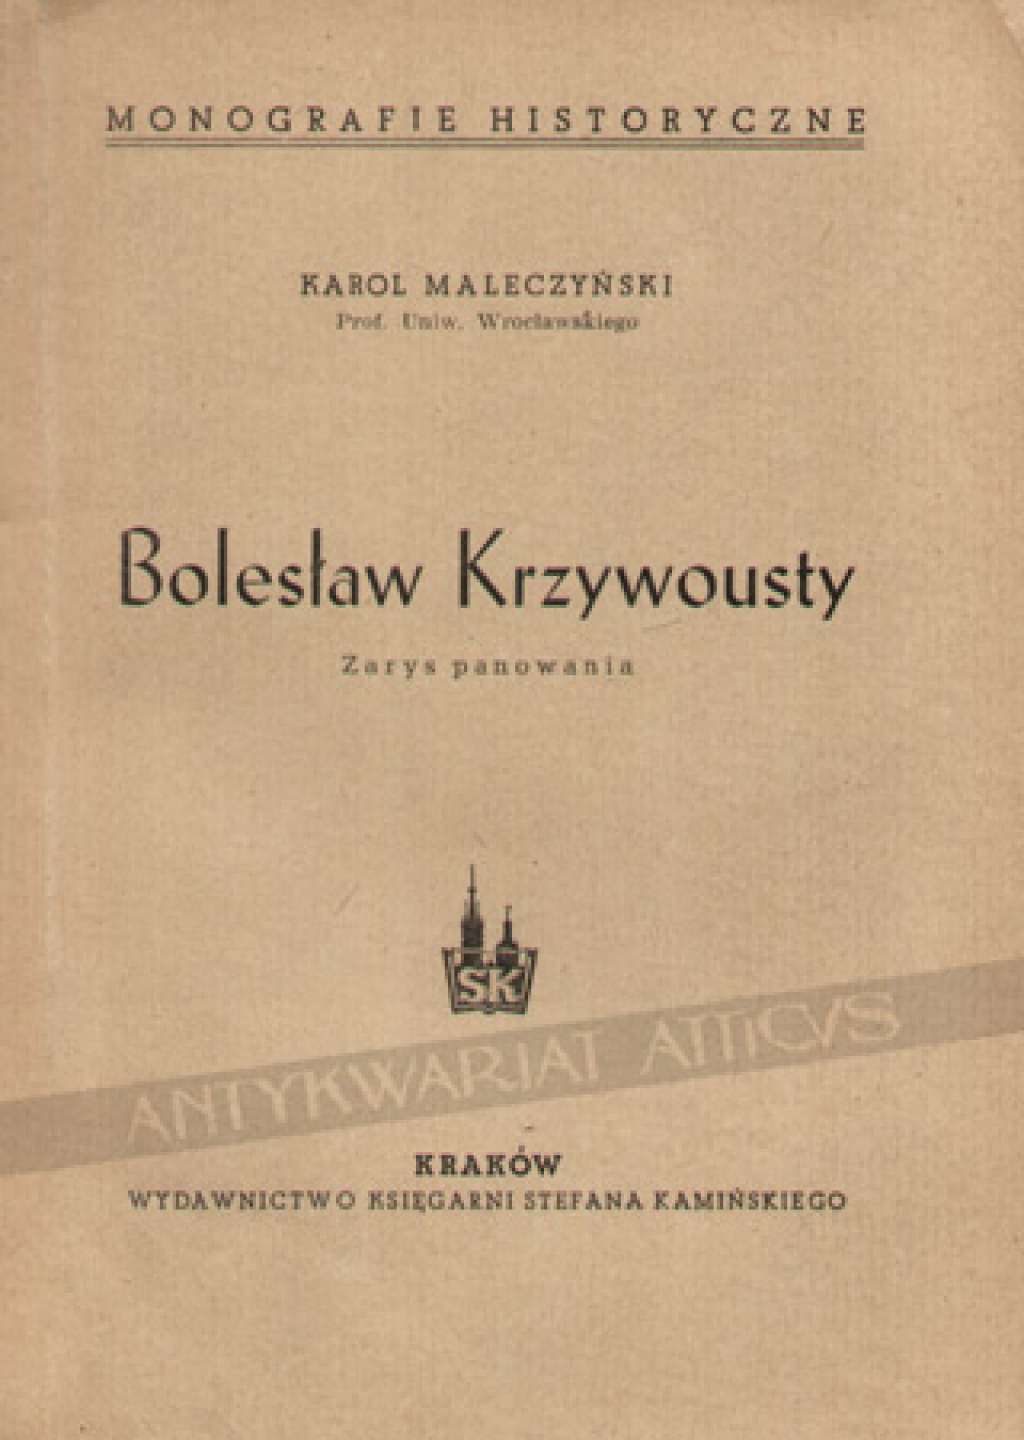 Bolesław Krzywousty. Zarys panowania